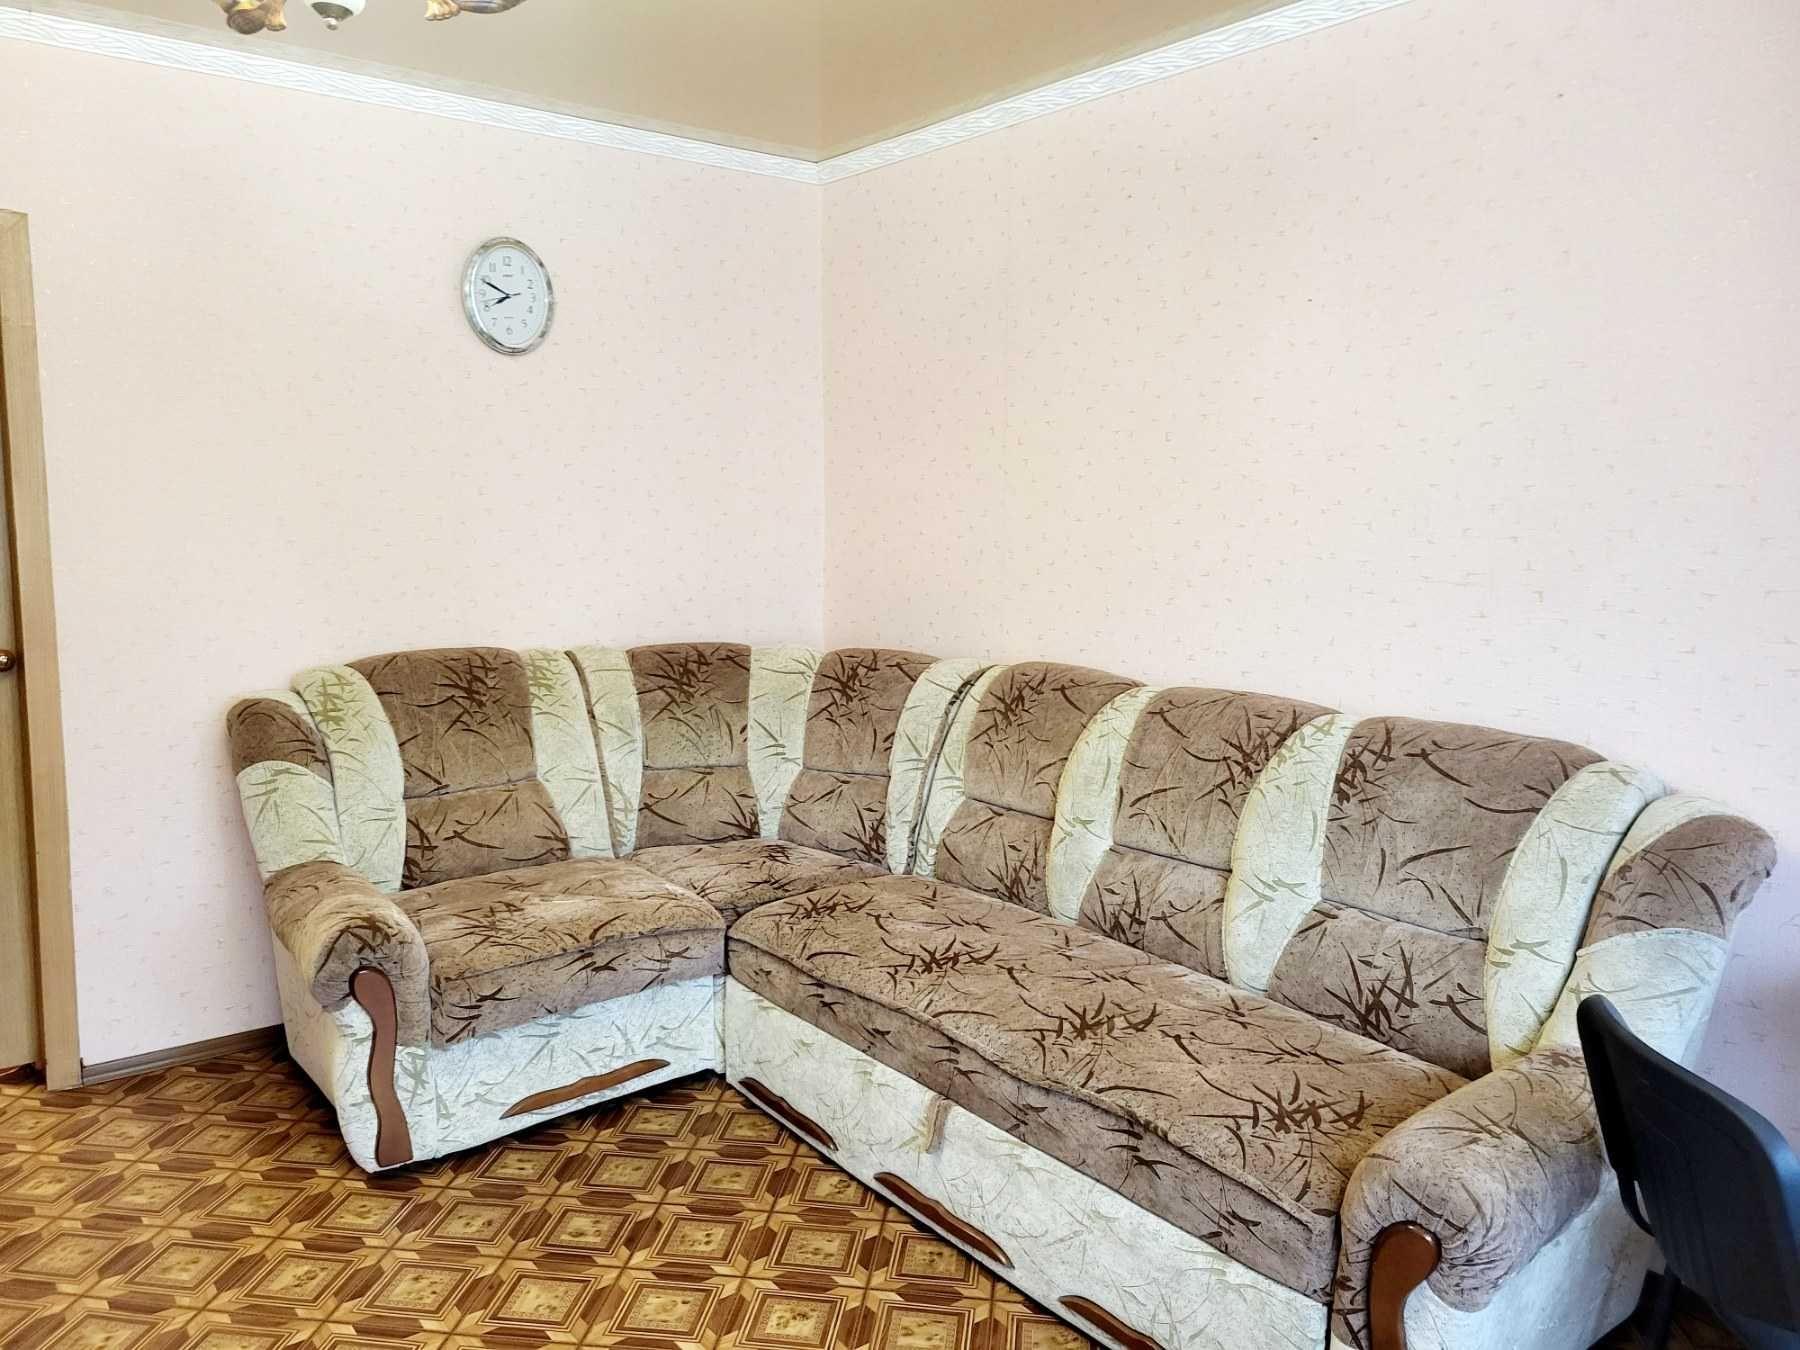 Продається 3 кімнатна квартира район Київська 5362